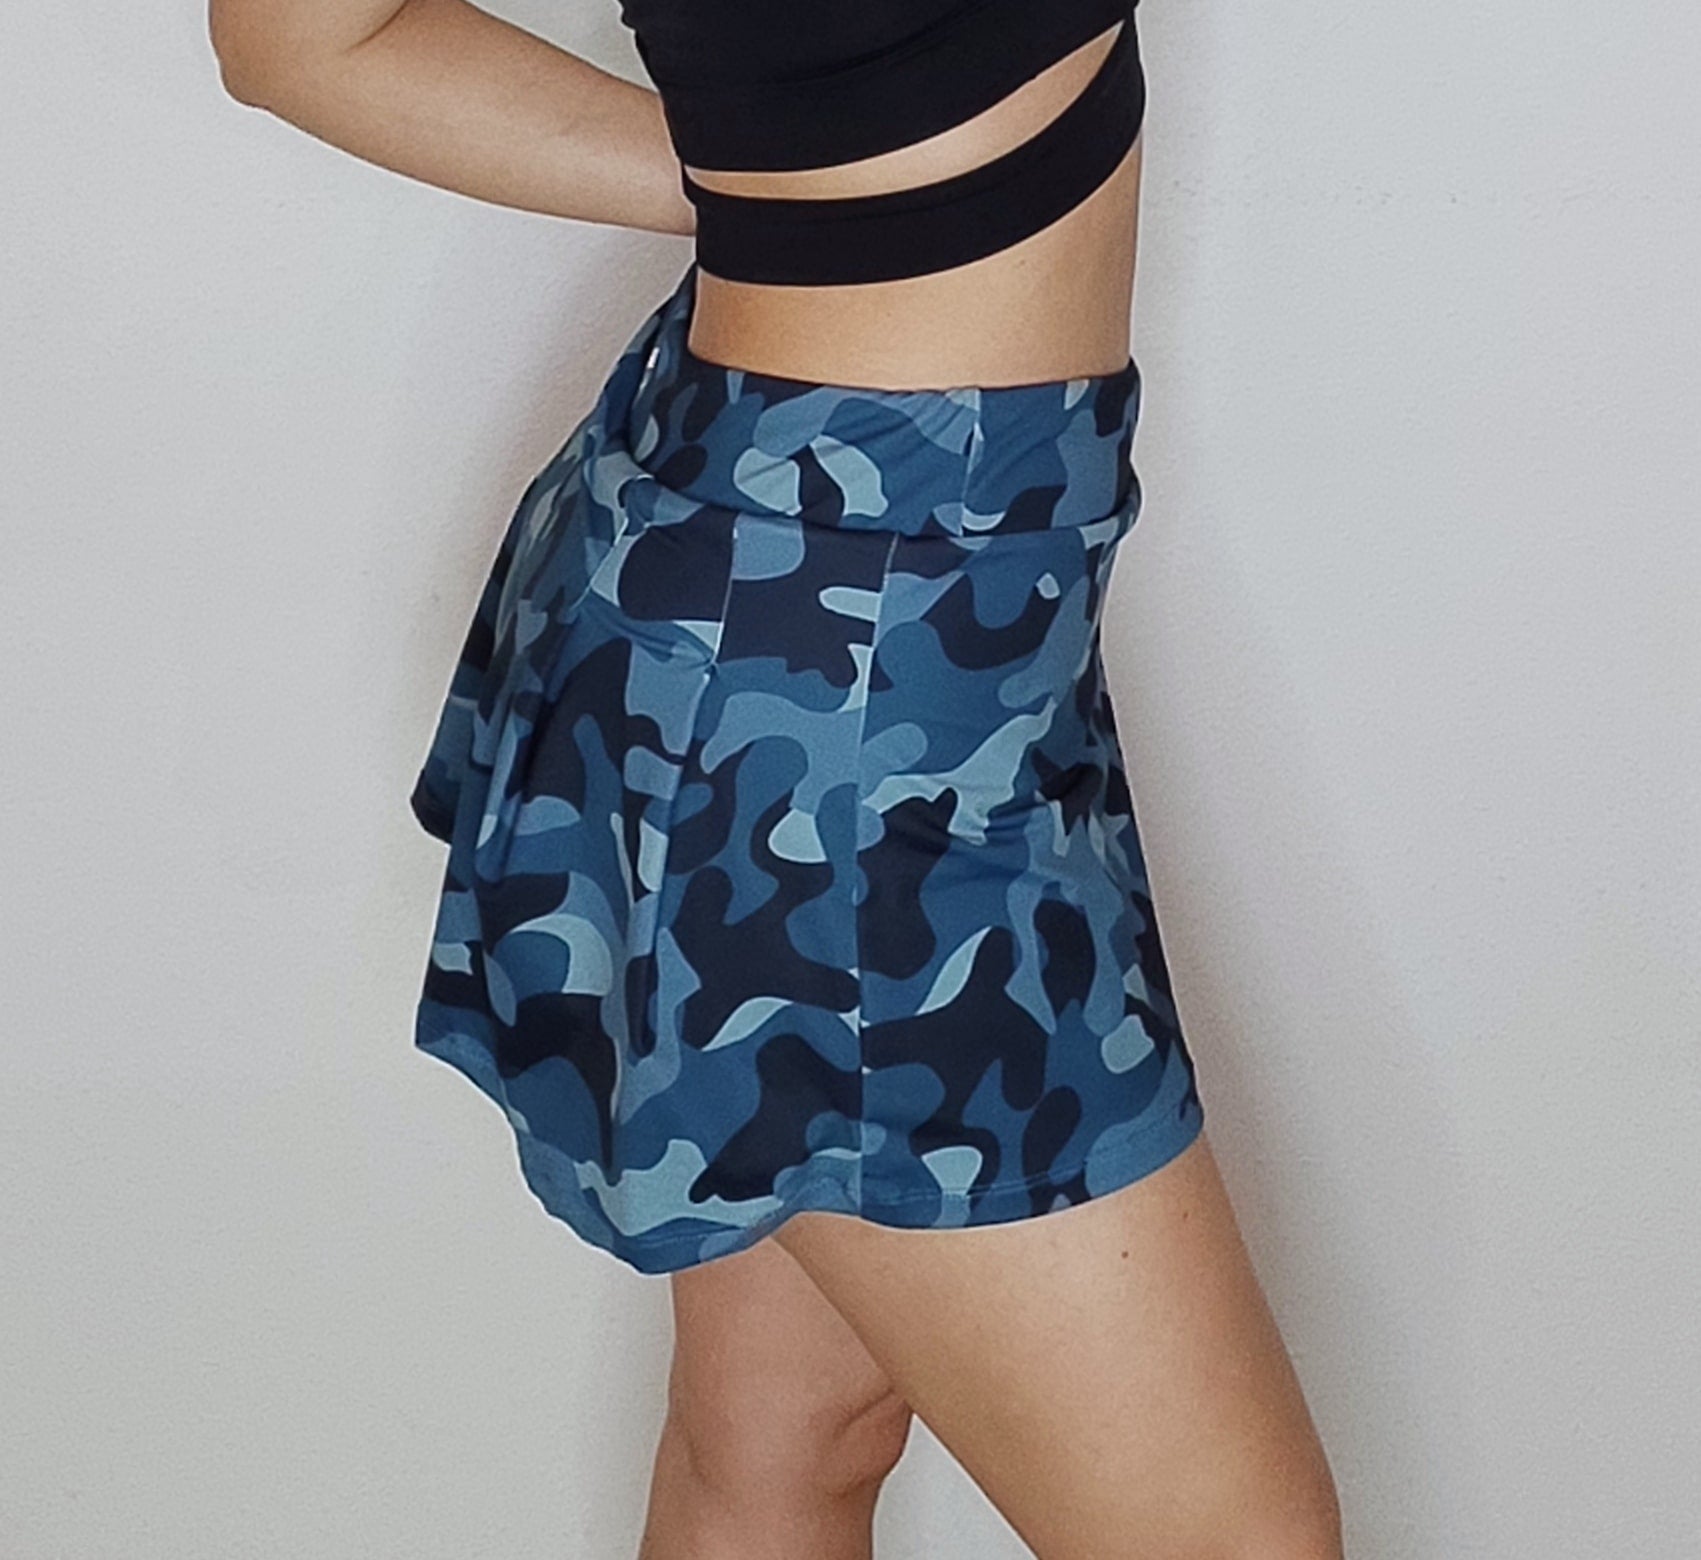 Blue camo skirt